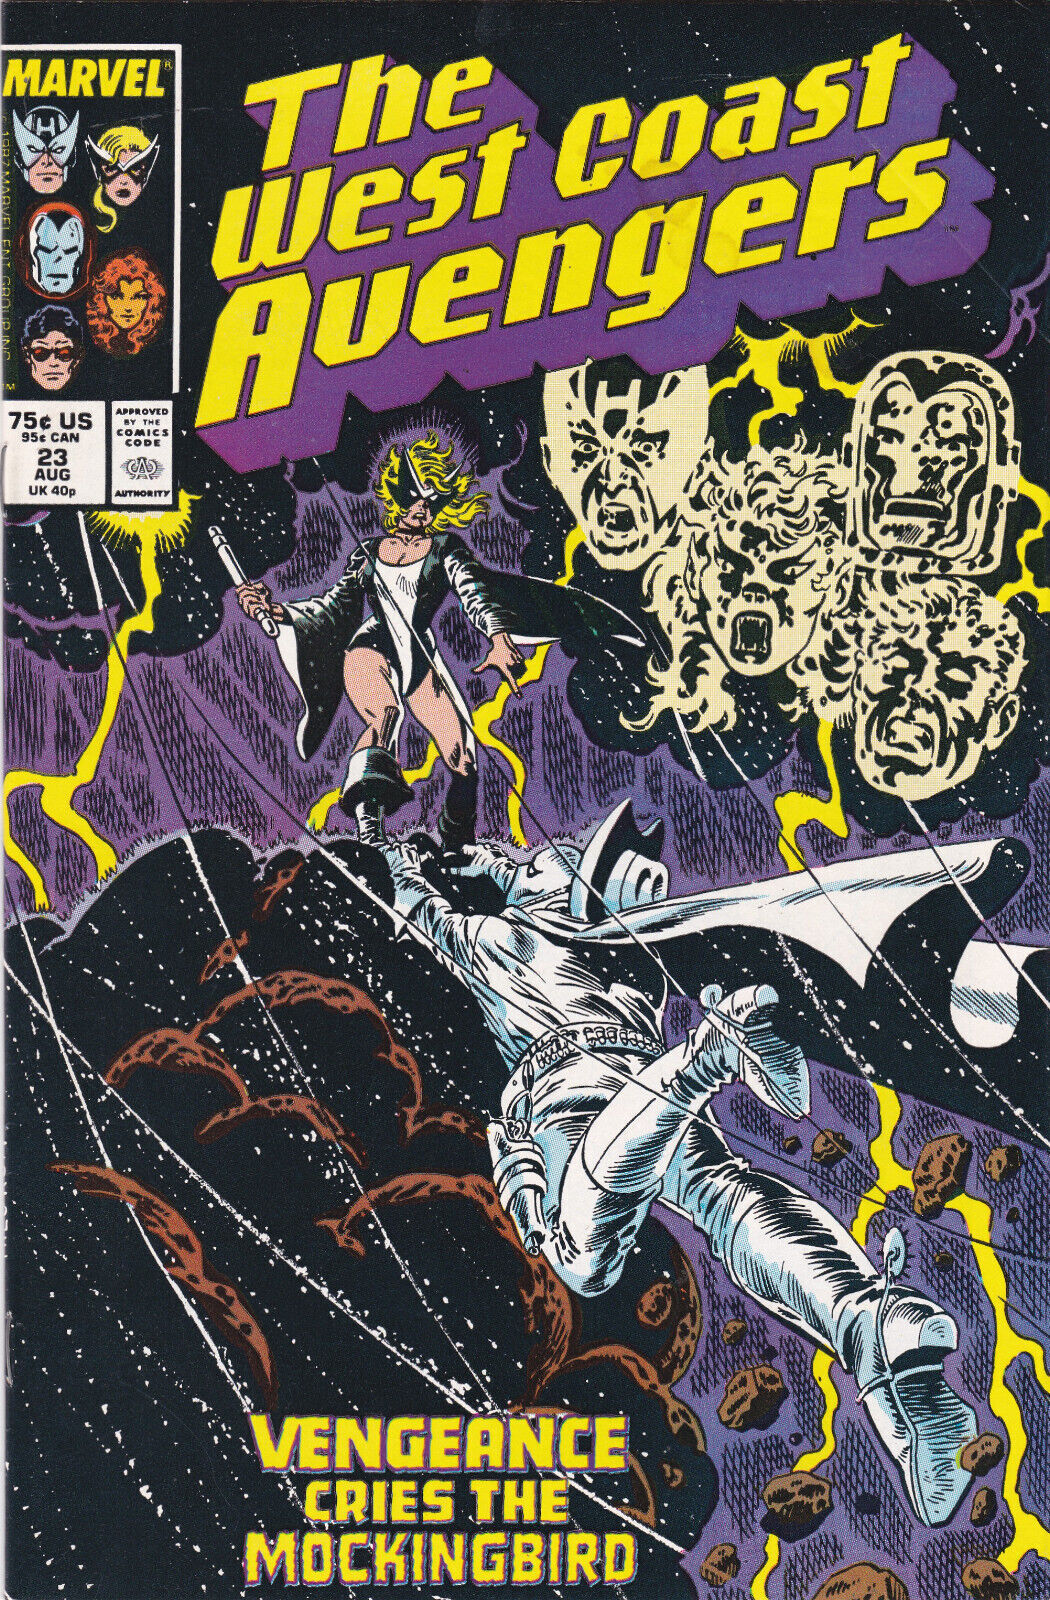 West Coast Avengers #23, Vol. 2 (1985-1989) Marvel Comics,High Grade